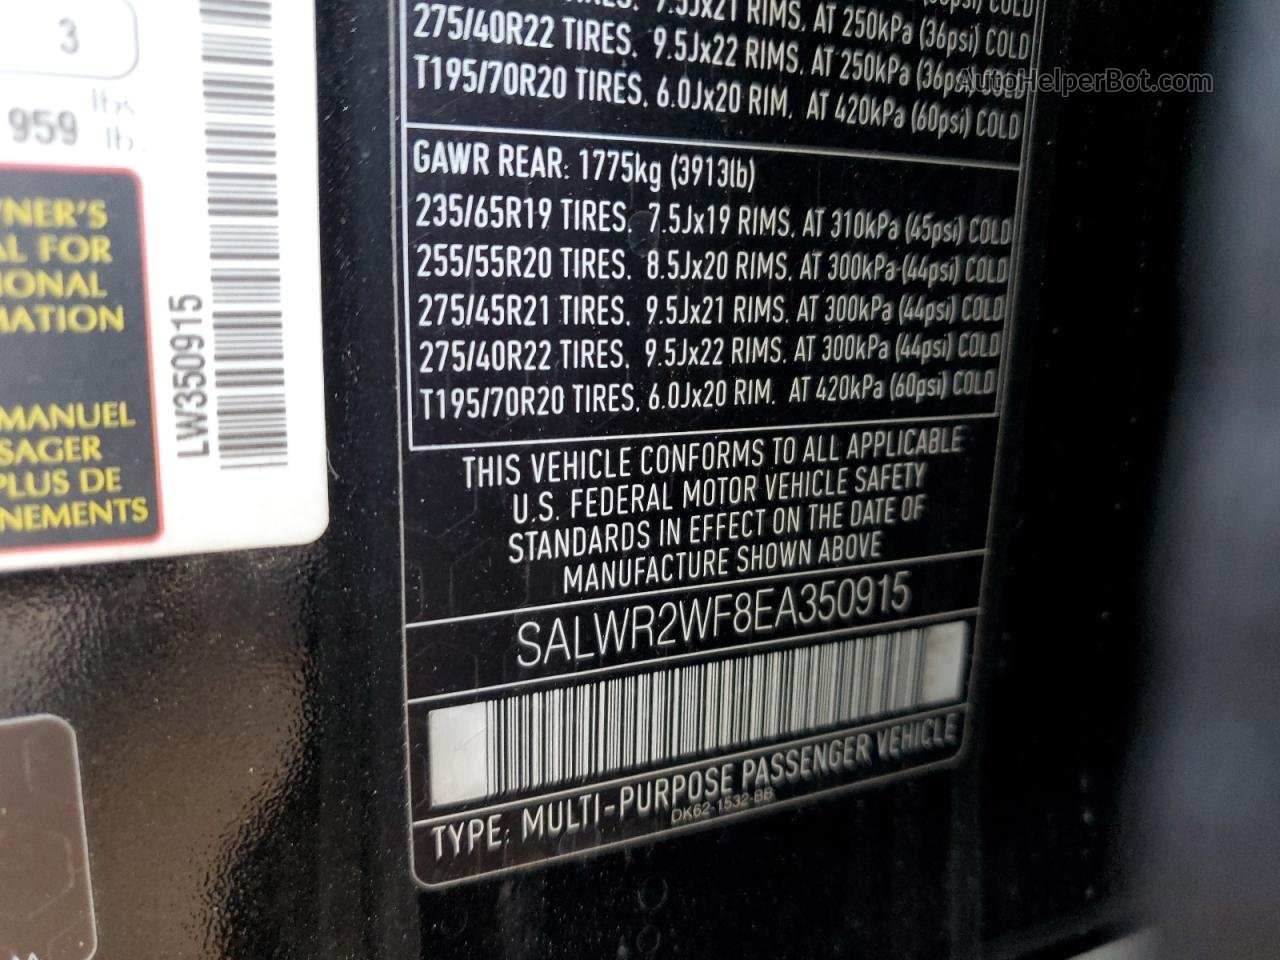 2014 Land Rover Range Rover Sport Hse Black vin: SALWR2WF8EA350915